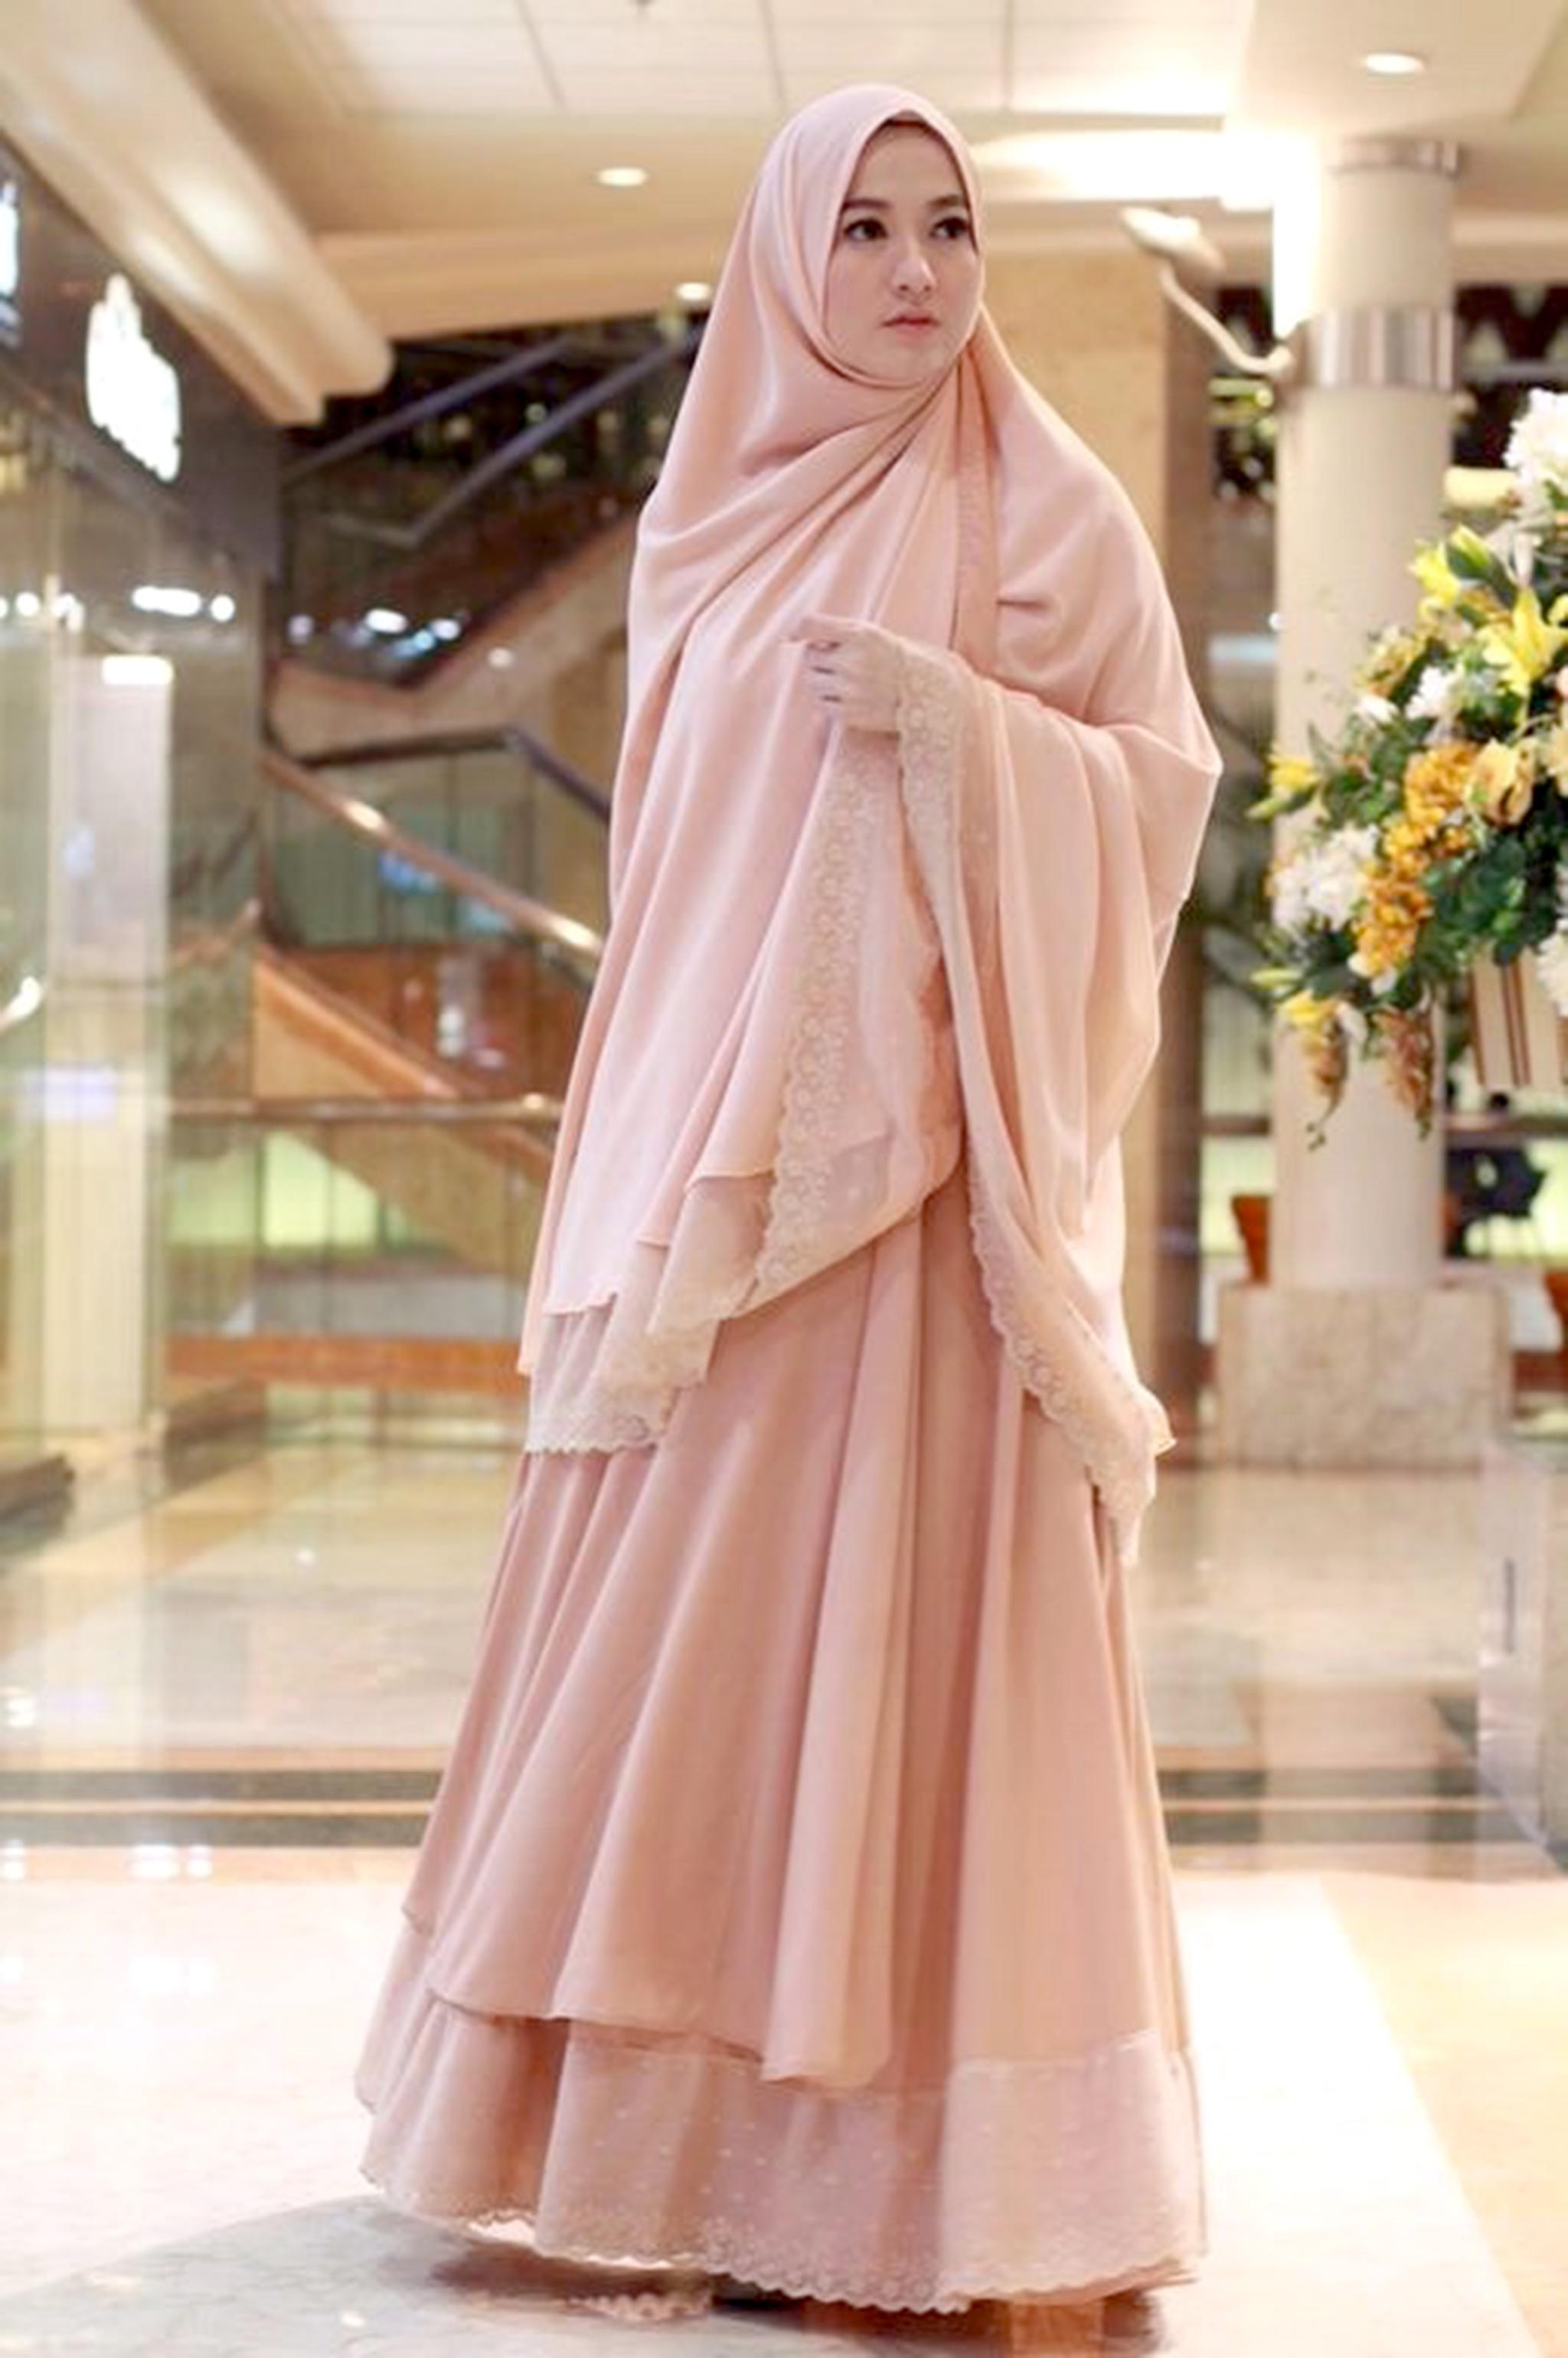 Sederhana dan Elegan, Tips Style Hijab Syar'i Pesta untuk Kondangan Ini